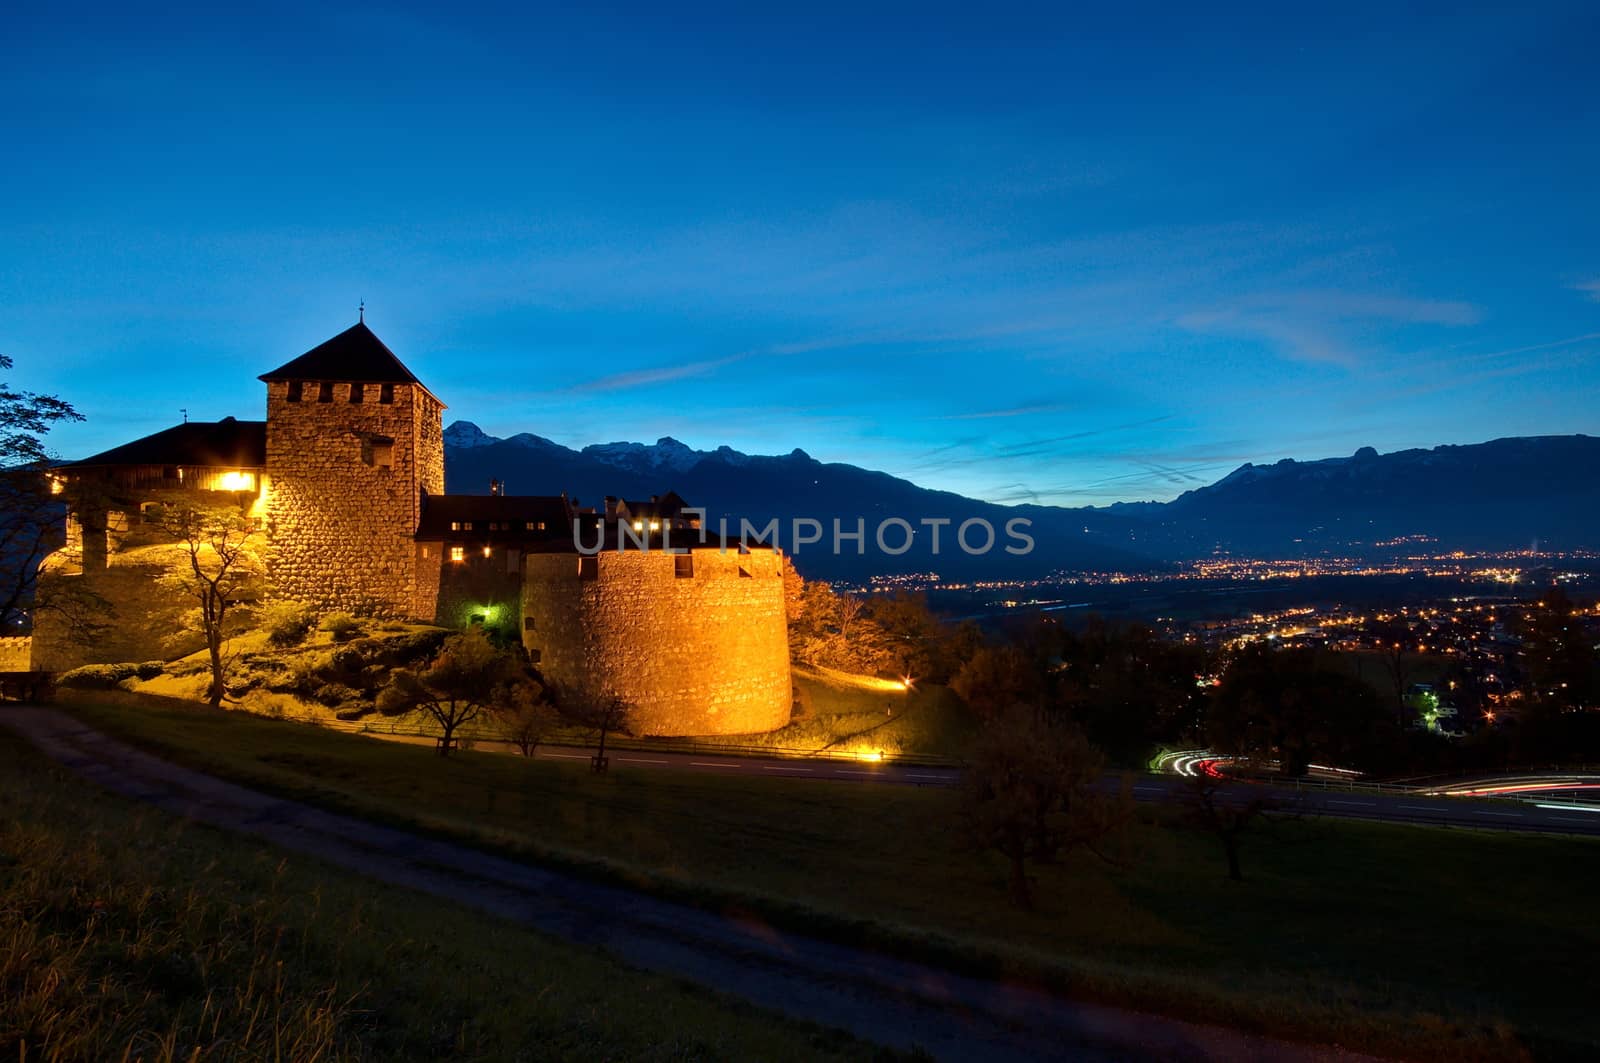 Castle of Vaduz in Liechtenstein at night by anderm